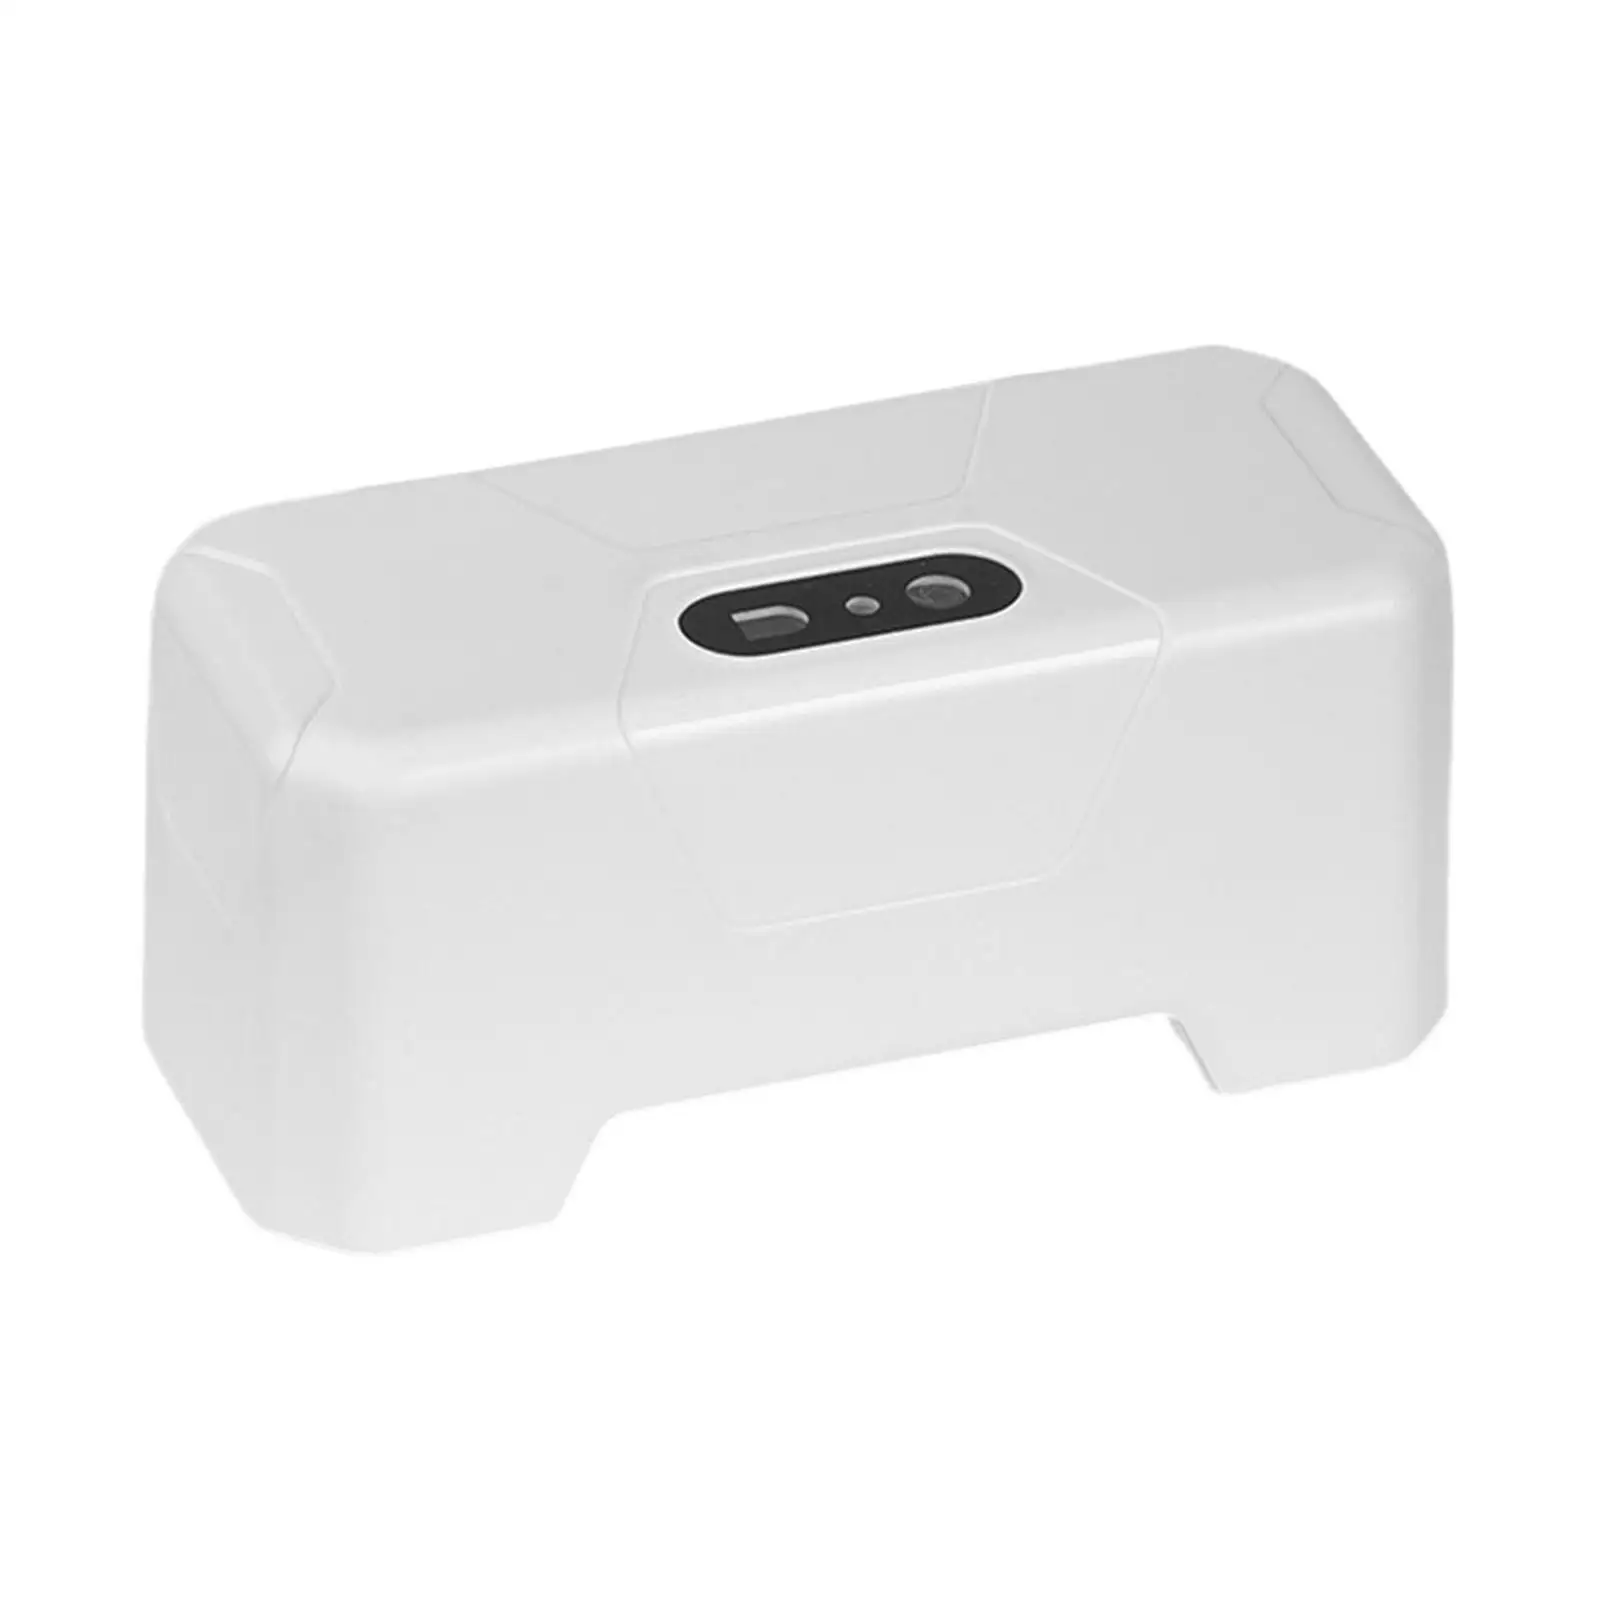 Toilet Flusher Toilet Flush Button Smart Induction Toilet Flushing Sens Hands Free Touchless Toilet Flush for Household Bathroom